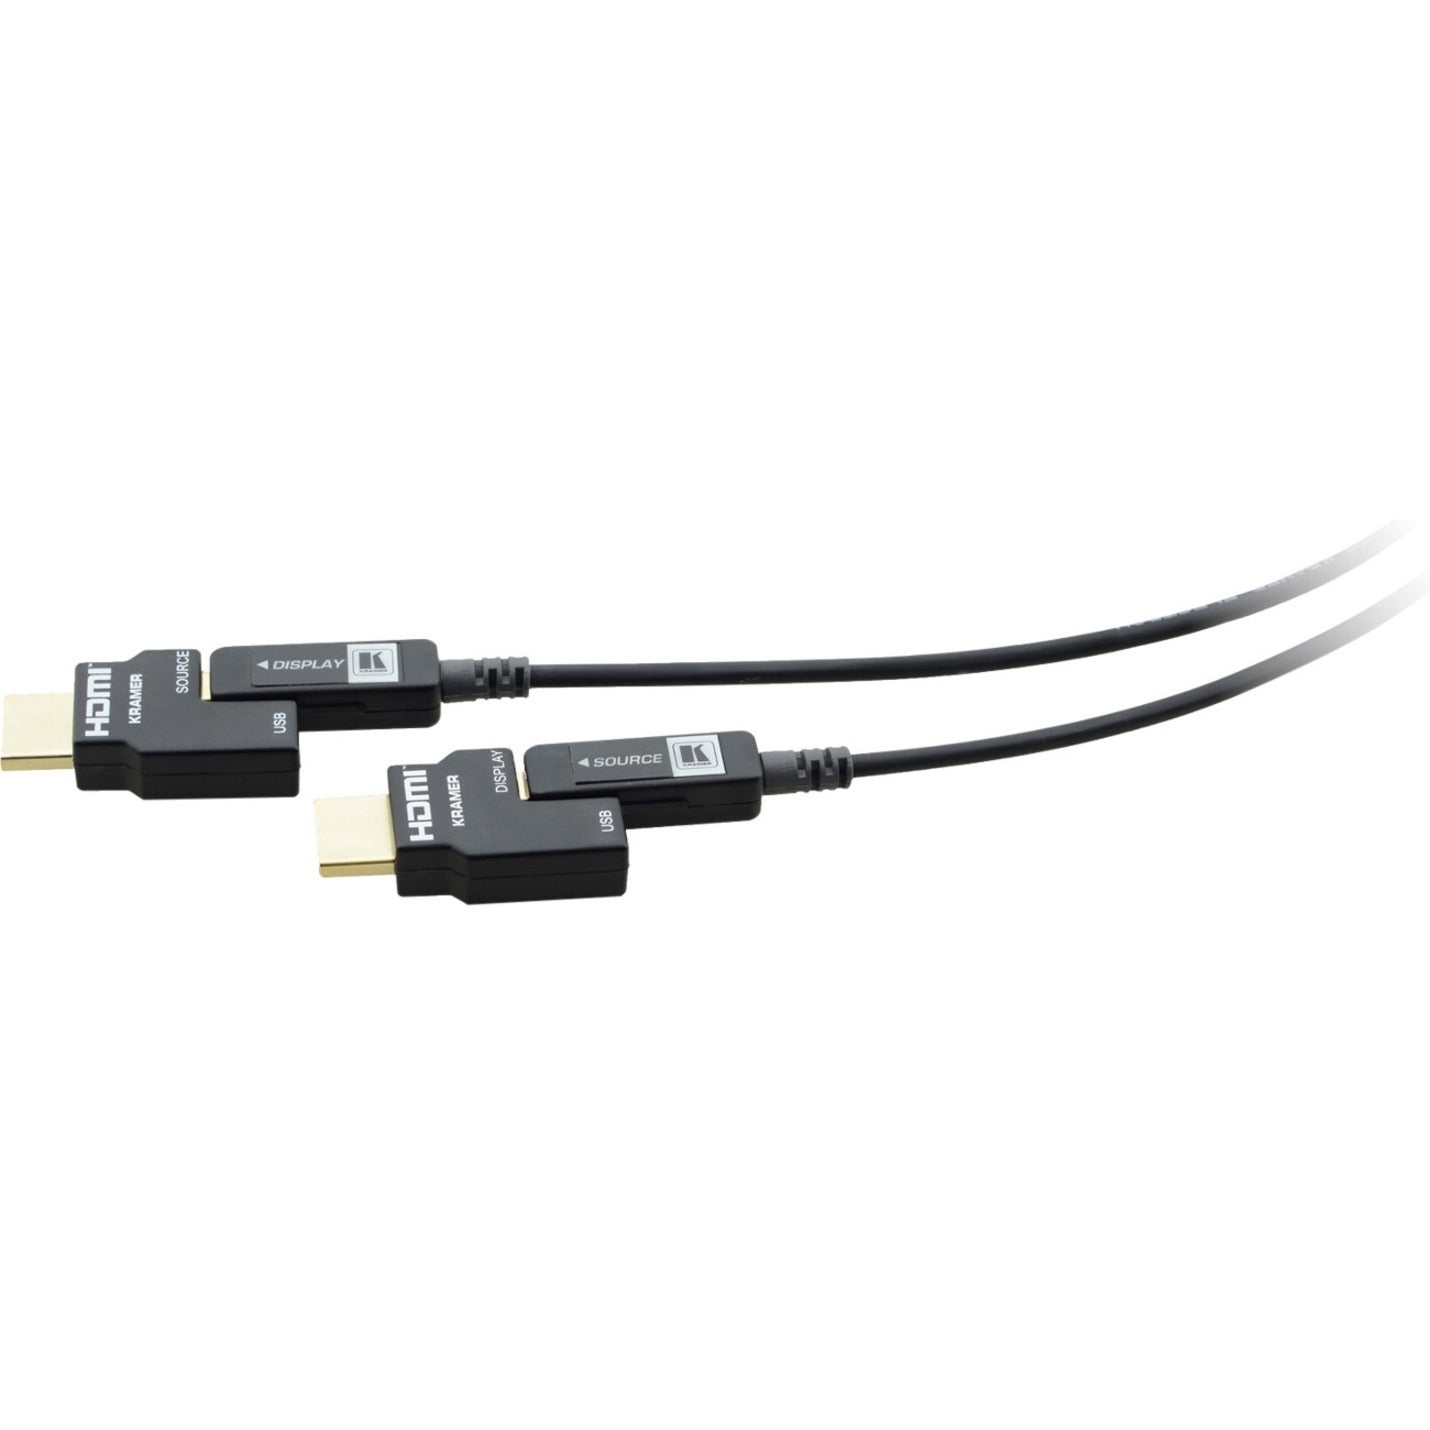 Marca: Kramer   Cable HDMI óptico activo Pluggable 4K CP-AOCH/60-98 98.43 pies Resistente a la Corrosión Protección contra EMI/RF Certificado RoHS